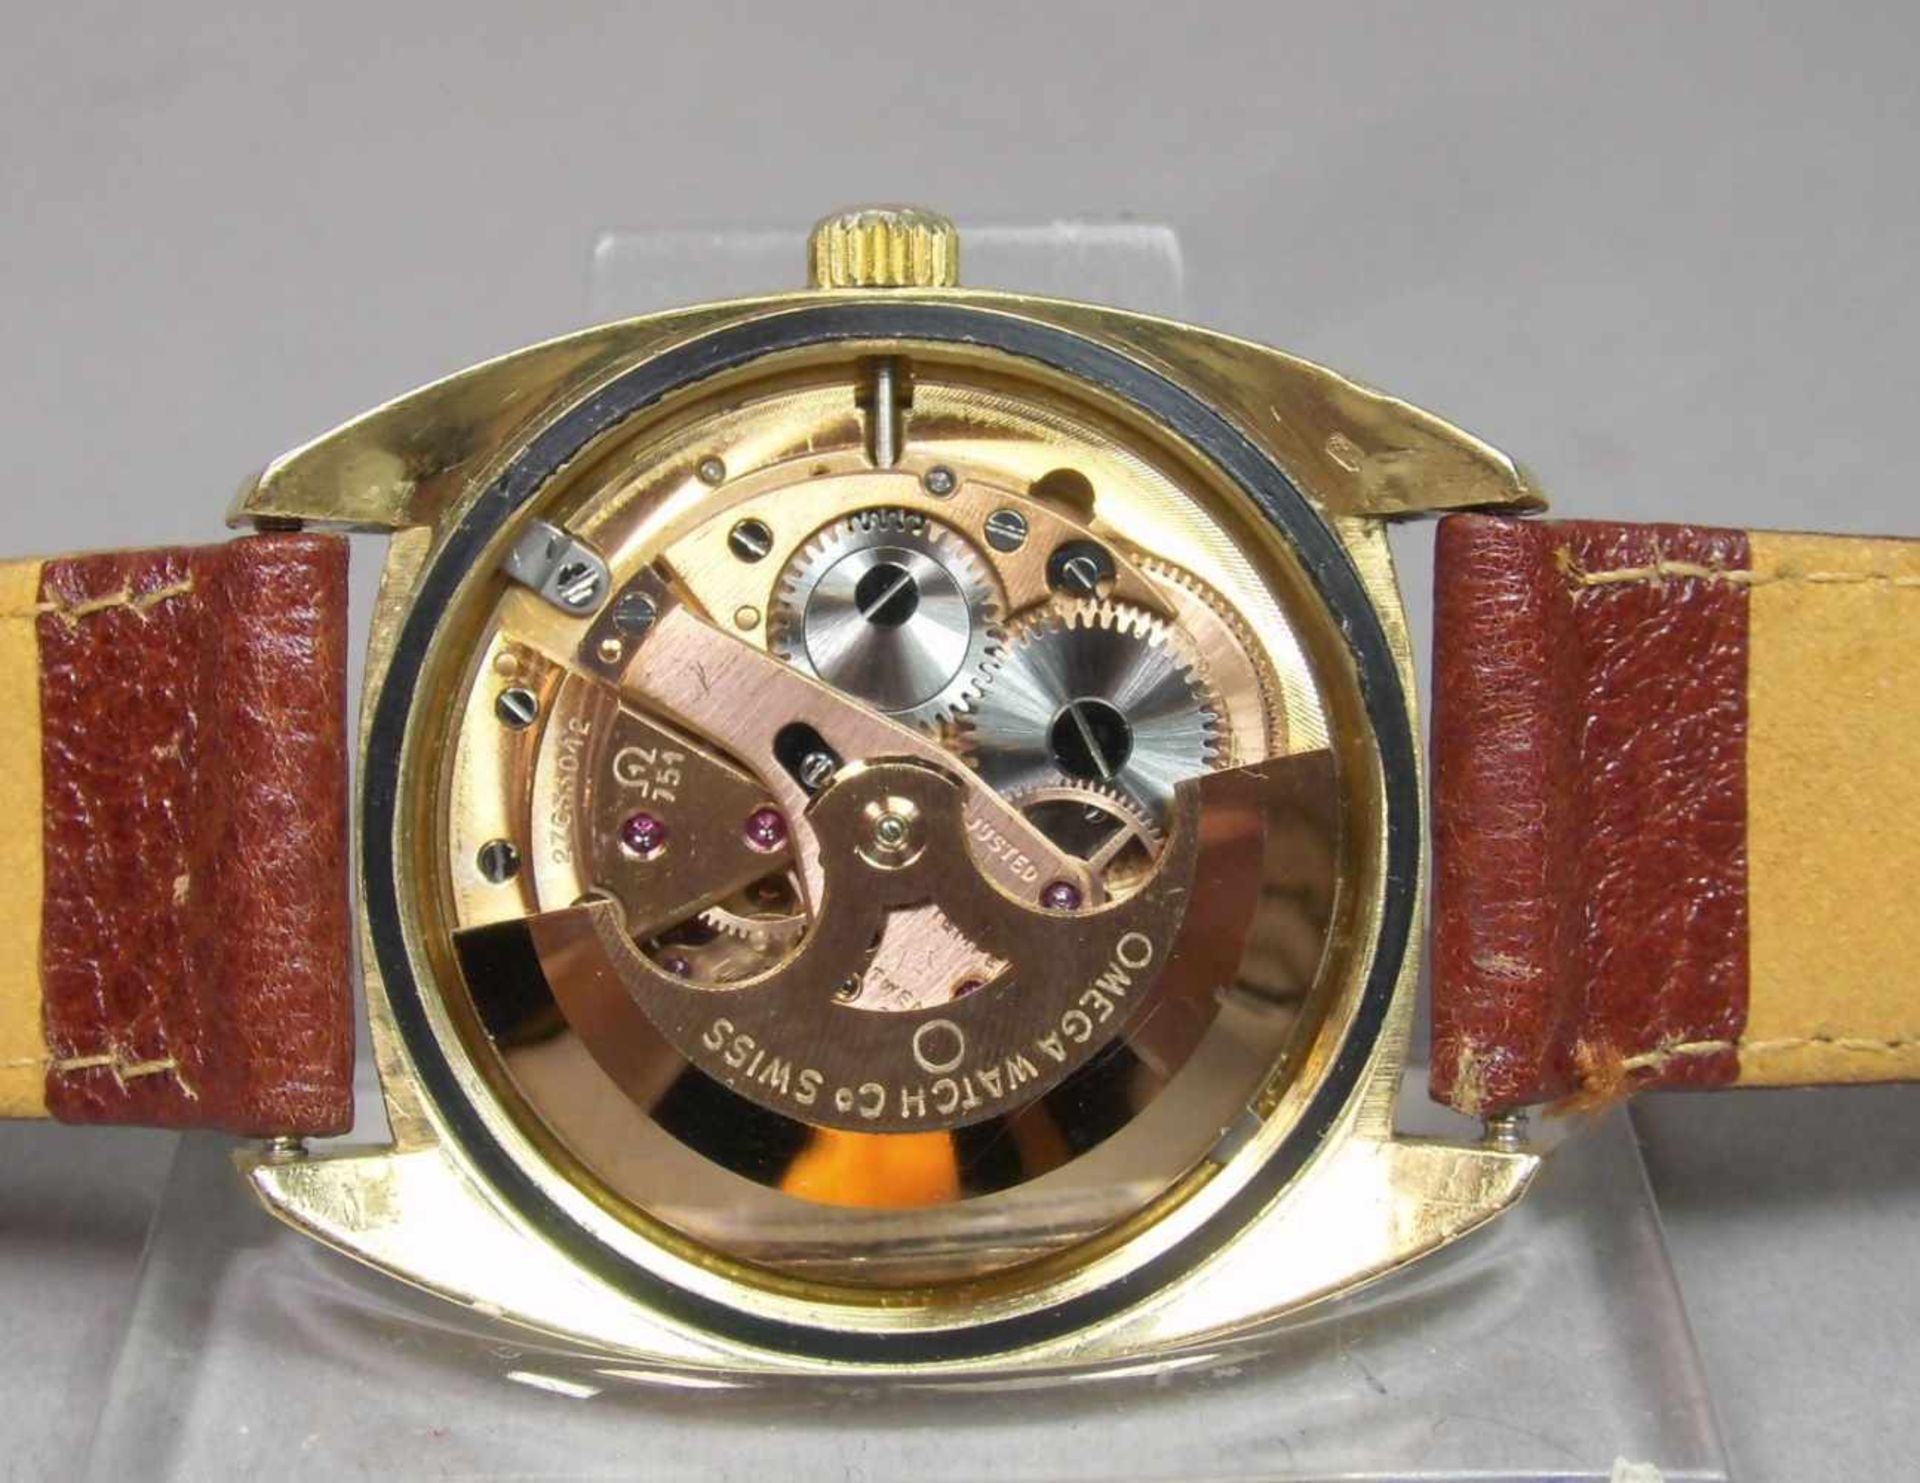 VINTAGE ARMBANDUHR: OMEGA CONSTELLATION / wristwatch, Herstellungsjahr 1968, Automatik-Uhr, - Bild 9 aus 11